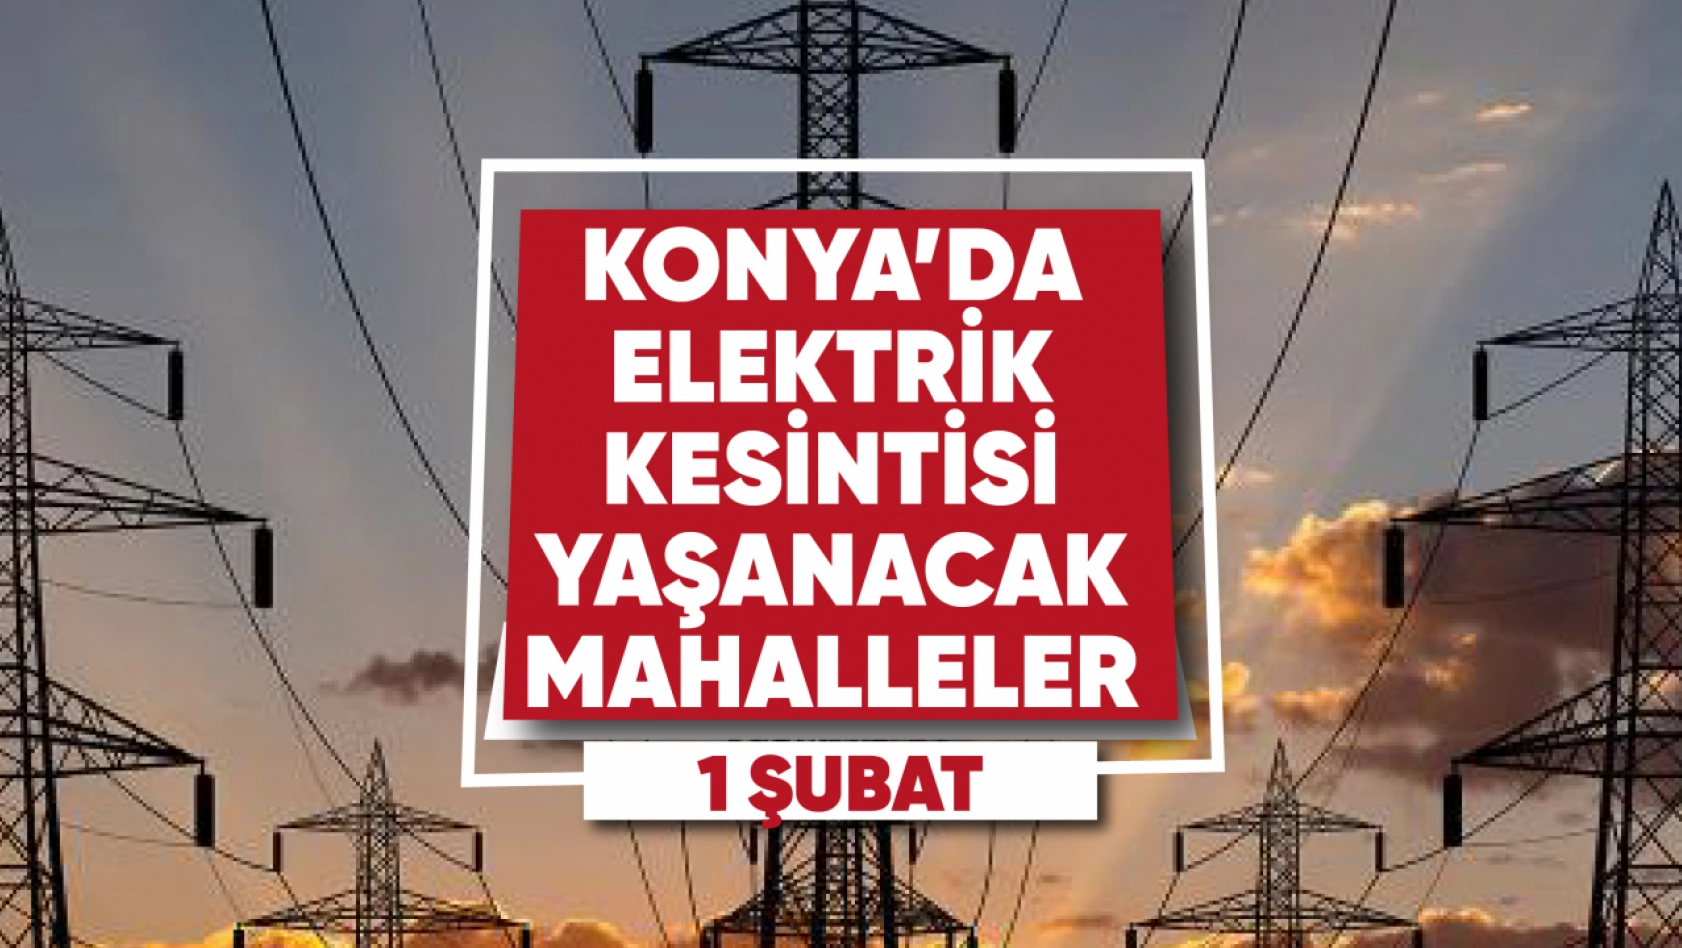 Konya'da elektrik kesintisi yaşanacak mahalle ve sokaklar (1 Şubat 2023)